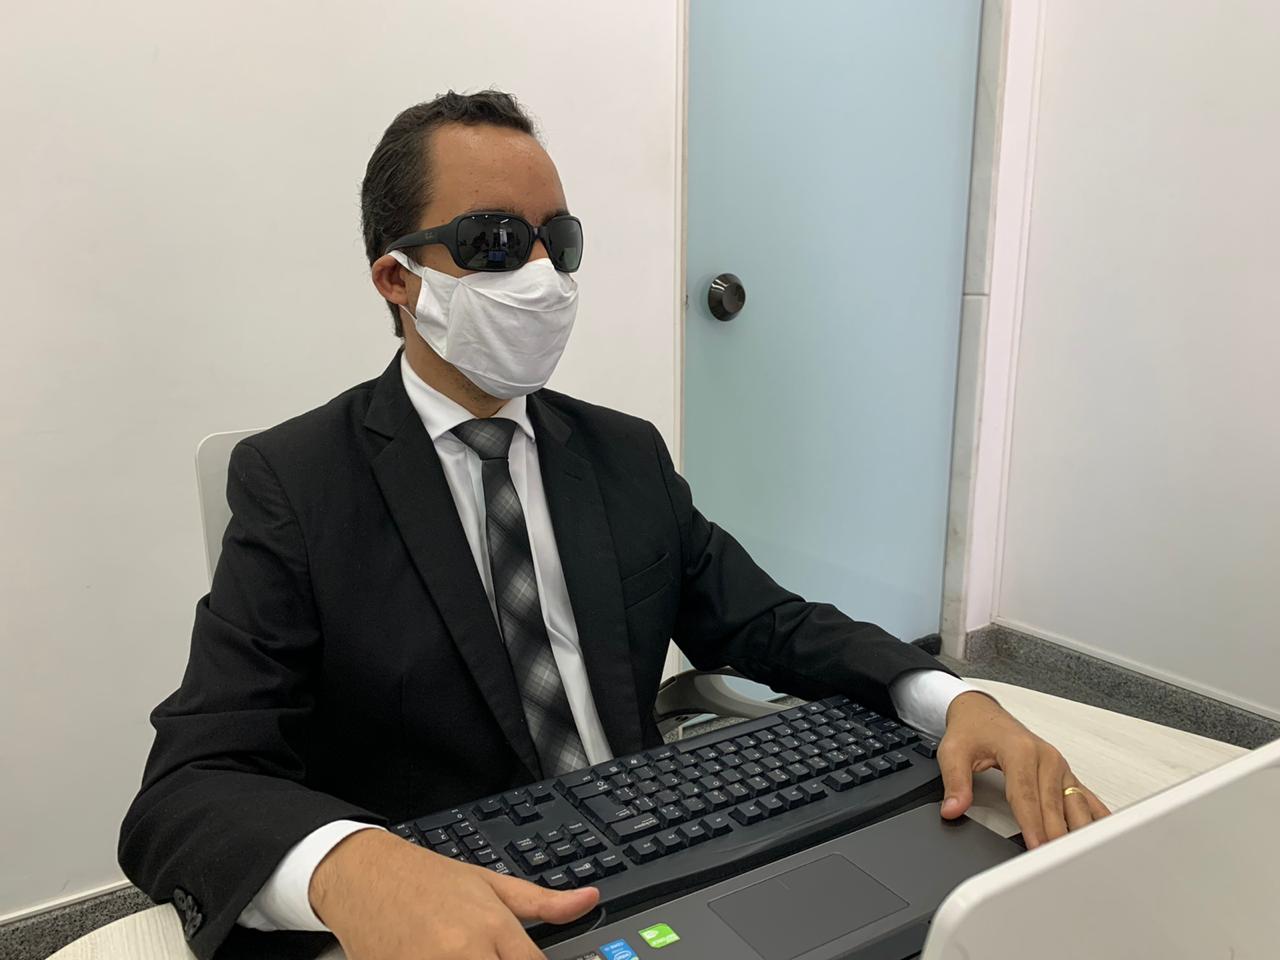 #PraTodoMundoVer Fotografia de Lucas que está sentado usando terno preto, óculos escuros e máscara de proteção facial, com as mãos sobre um teclado de computador. 